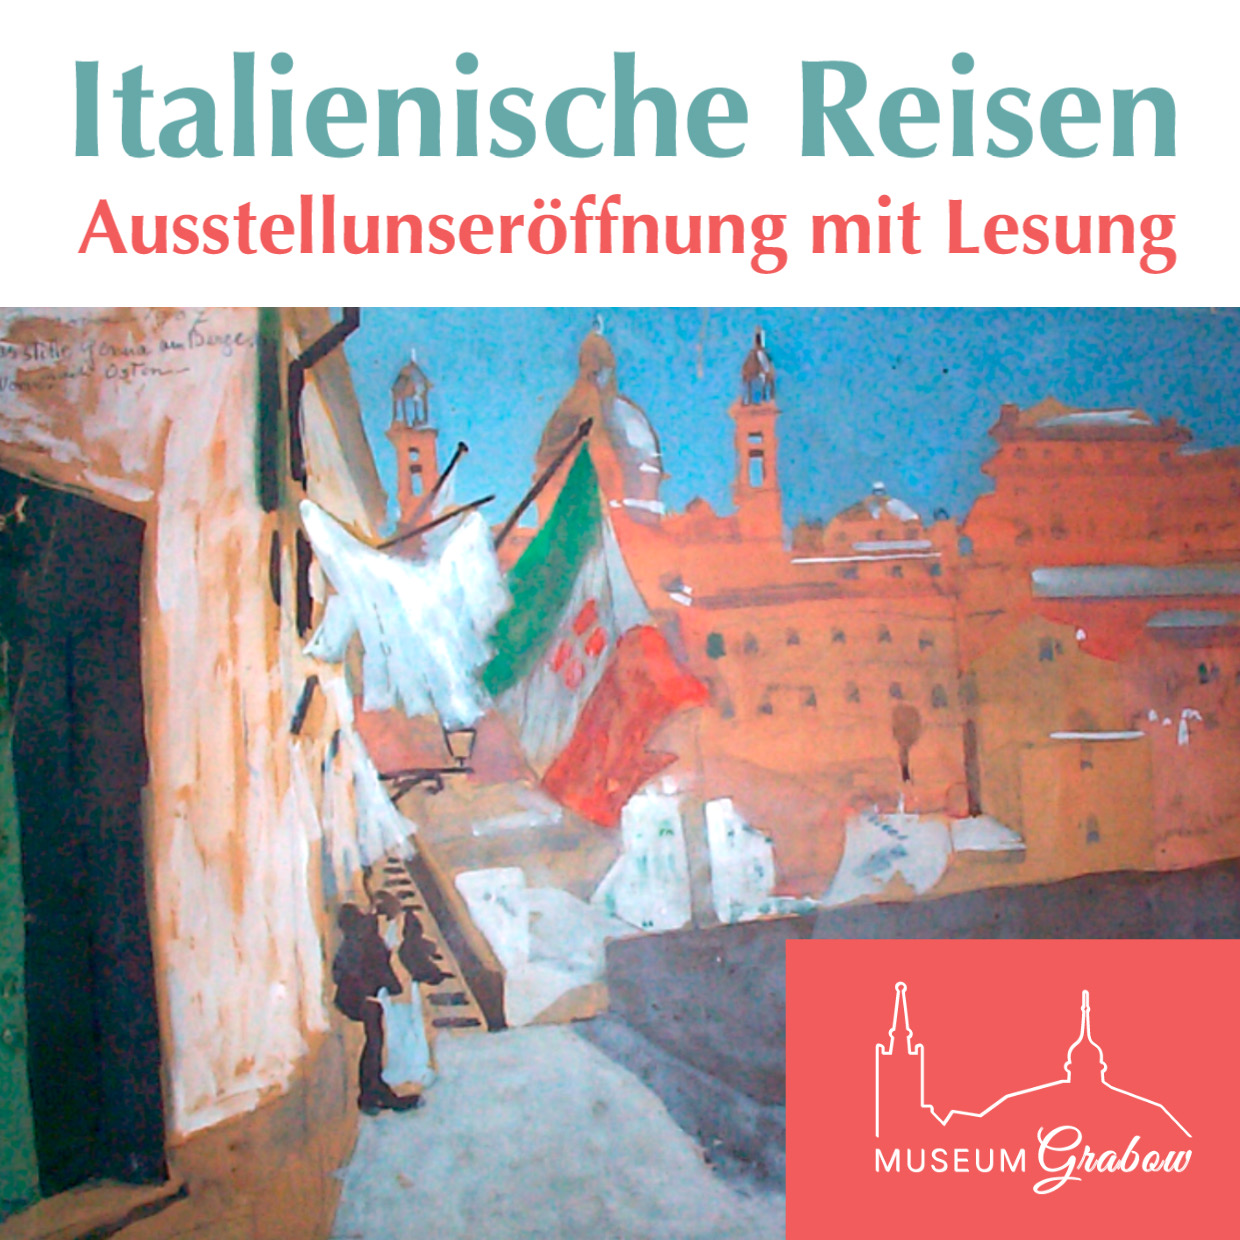 Ausstellungseröffnung "Italienische Reisen" mit Lesung im Museum Grabow